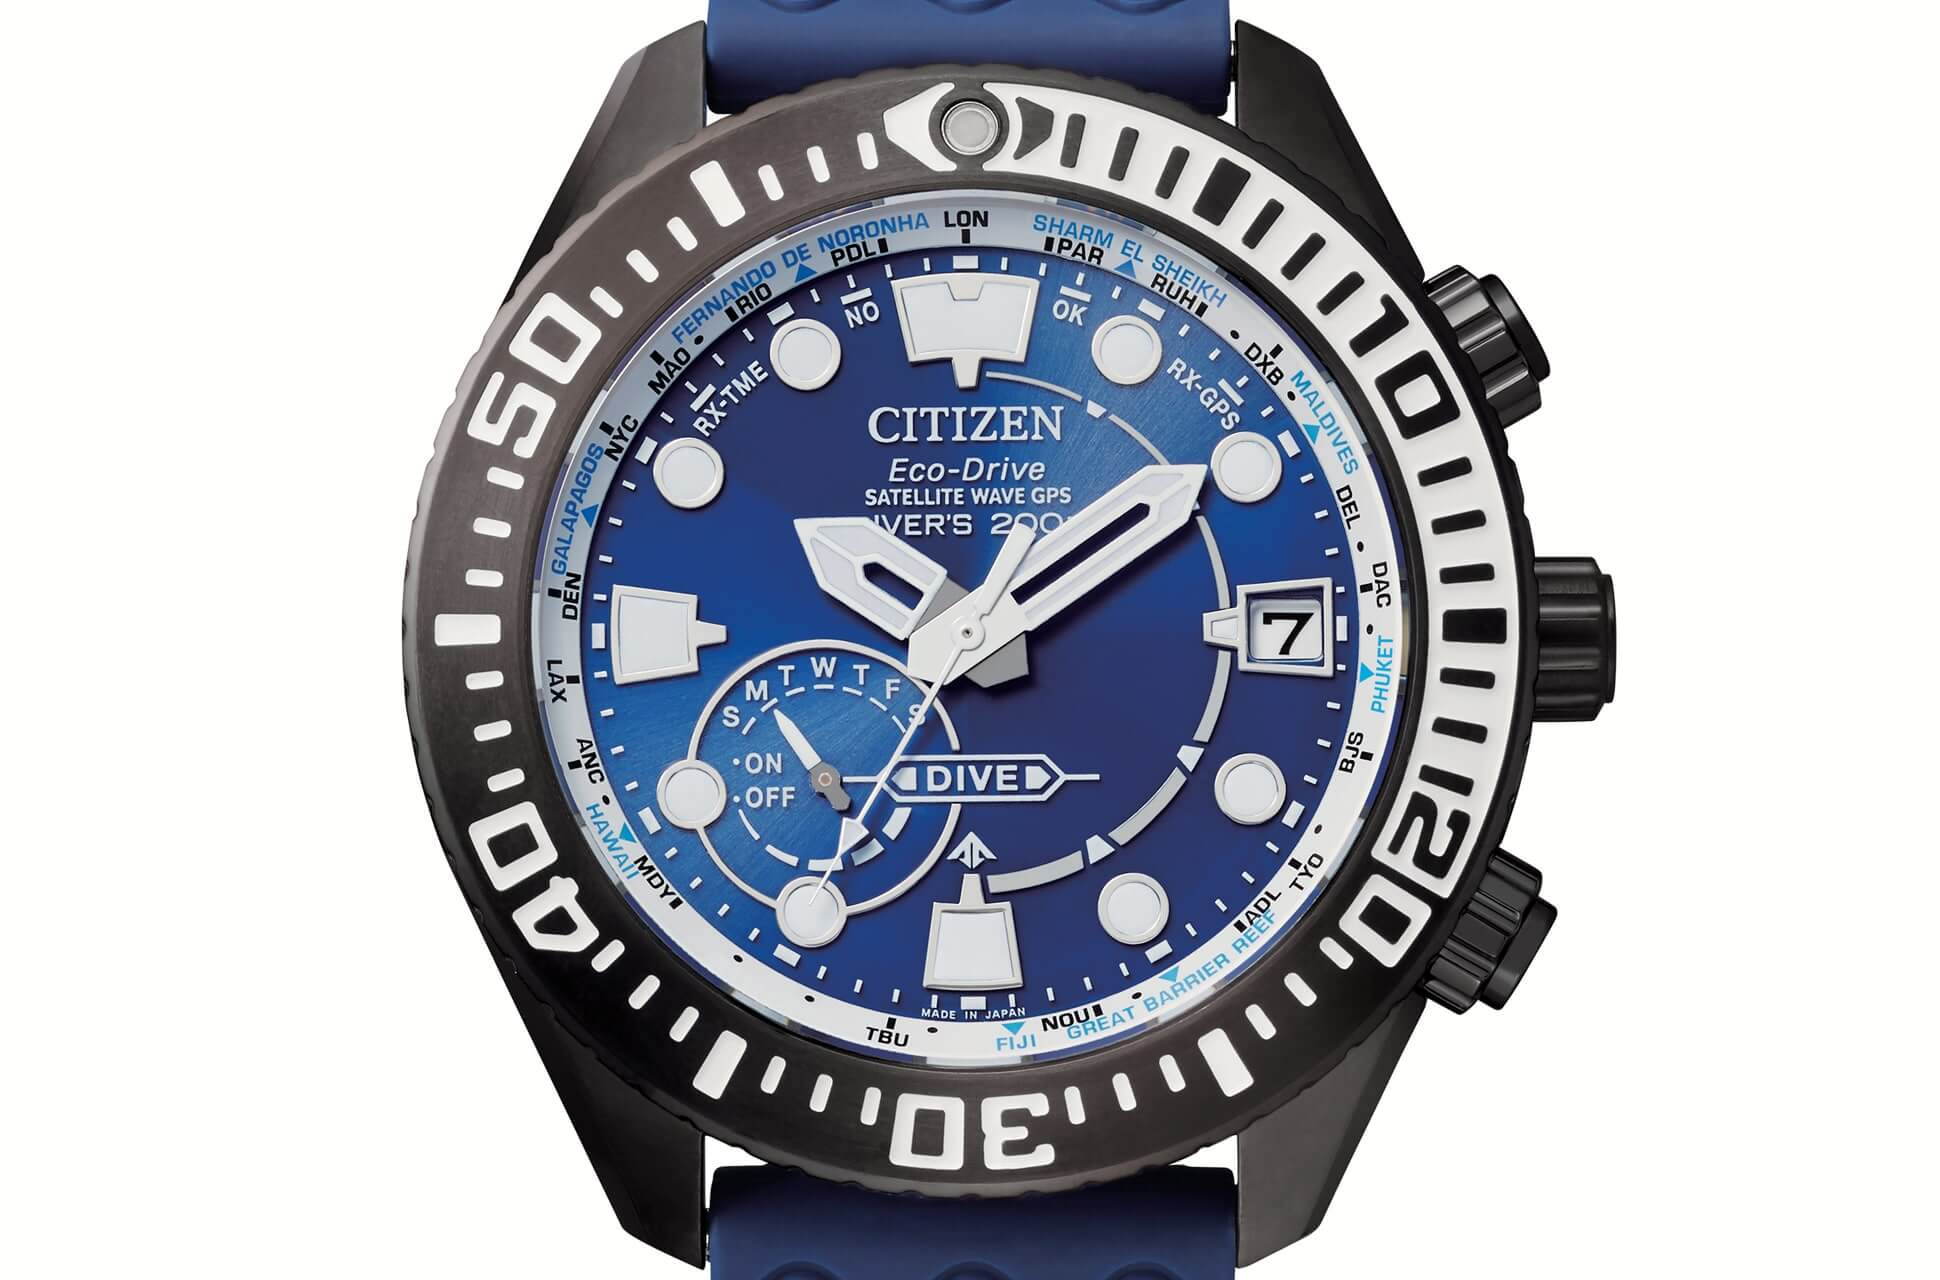 Citizen Wave Diver 200m Citizen-satellite-wave-gps-diver-super-titanium-6